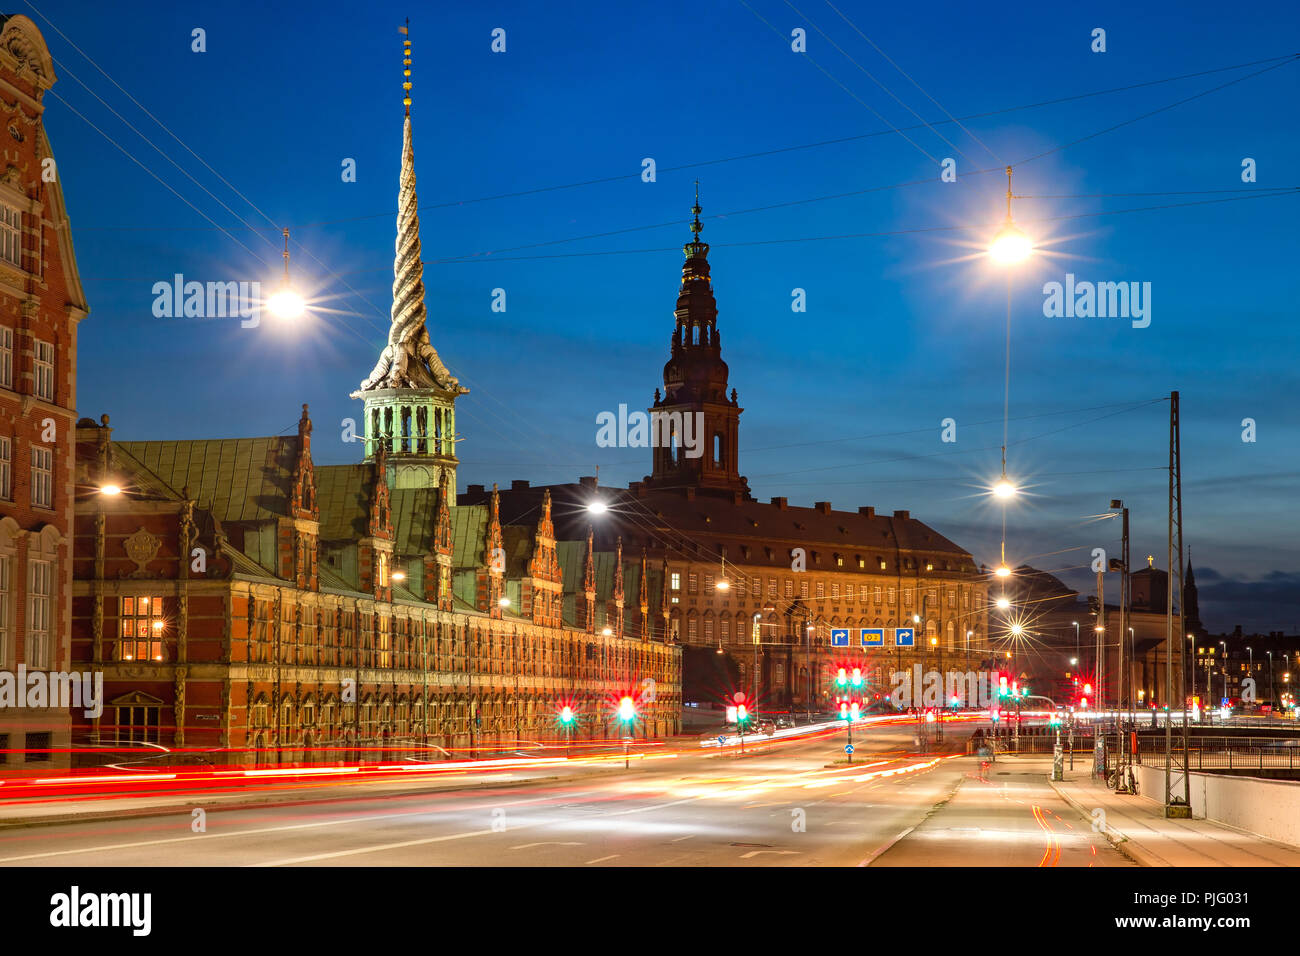 Boersen and Christiansborg in Copenhagen, Denmark Stock Photo